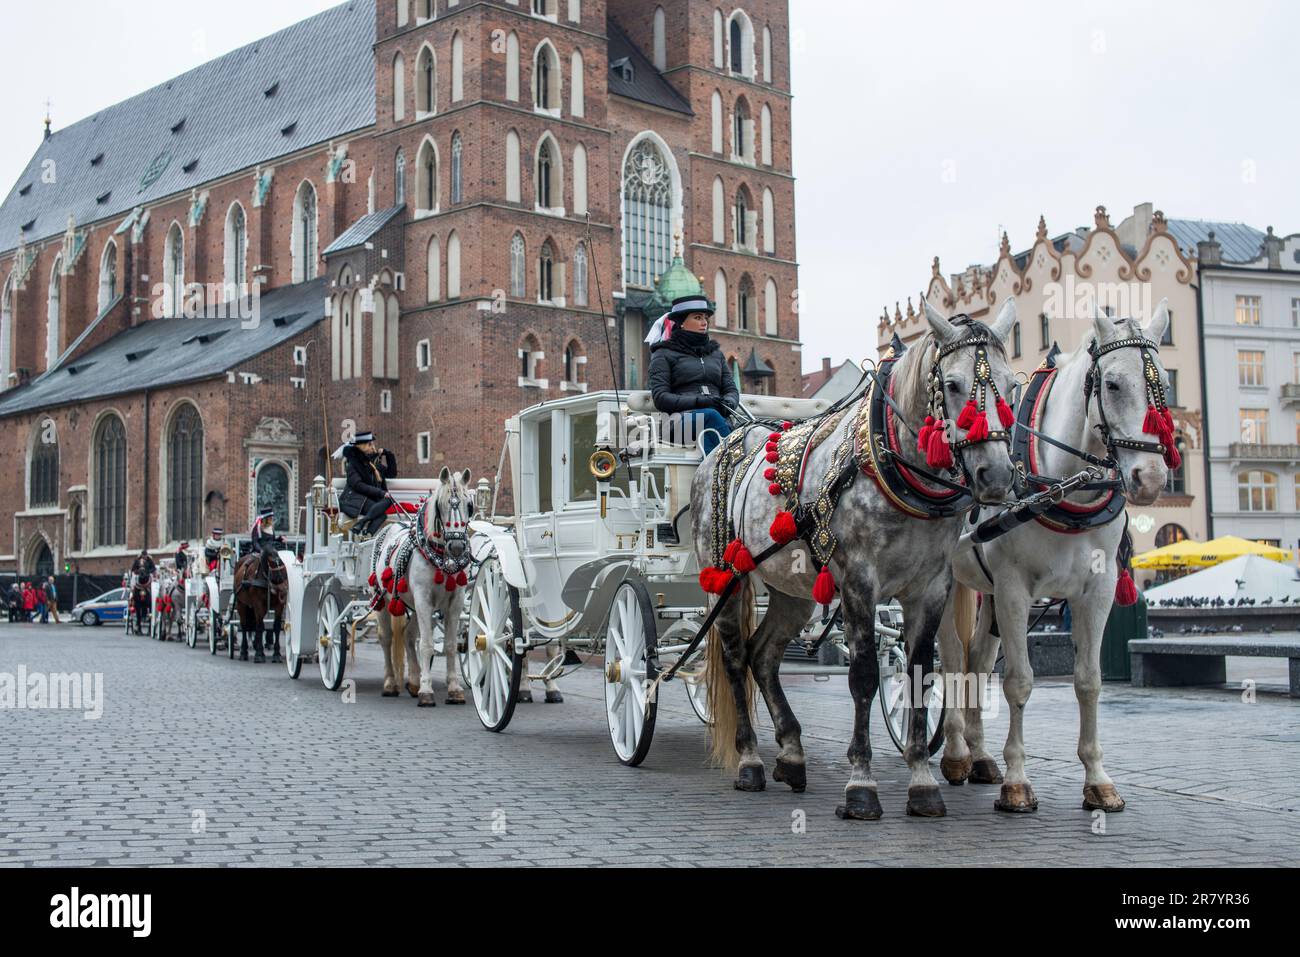 Horse-drawn carriages, Krakow, Poland Stock Photo